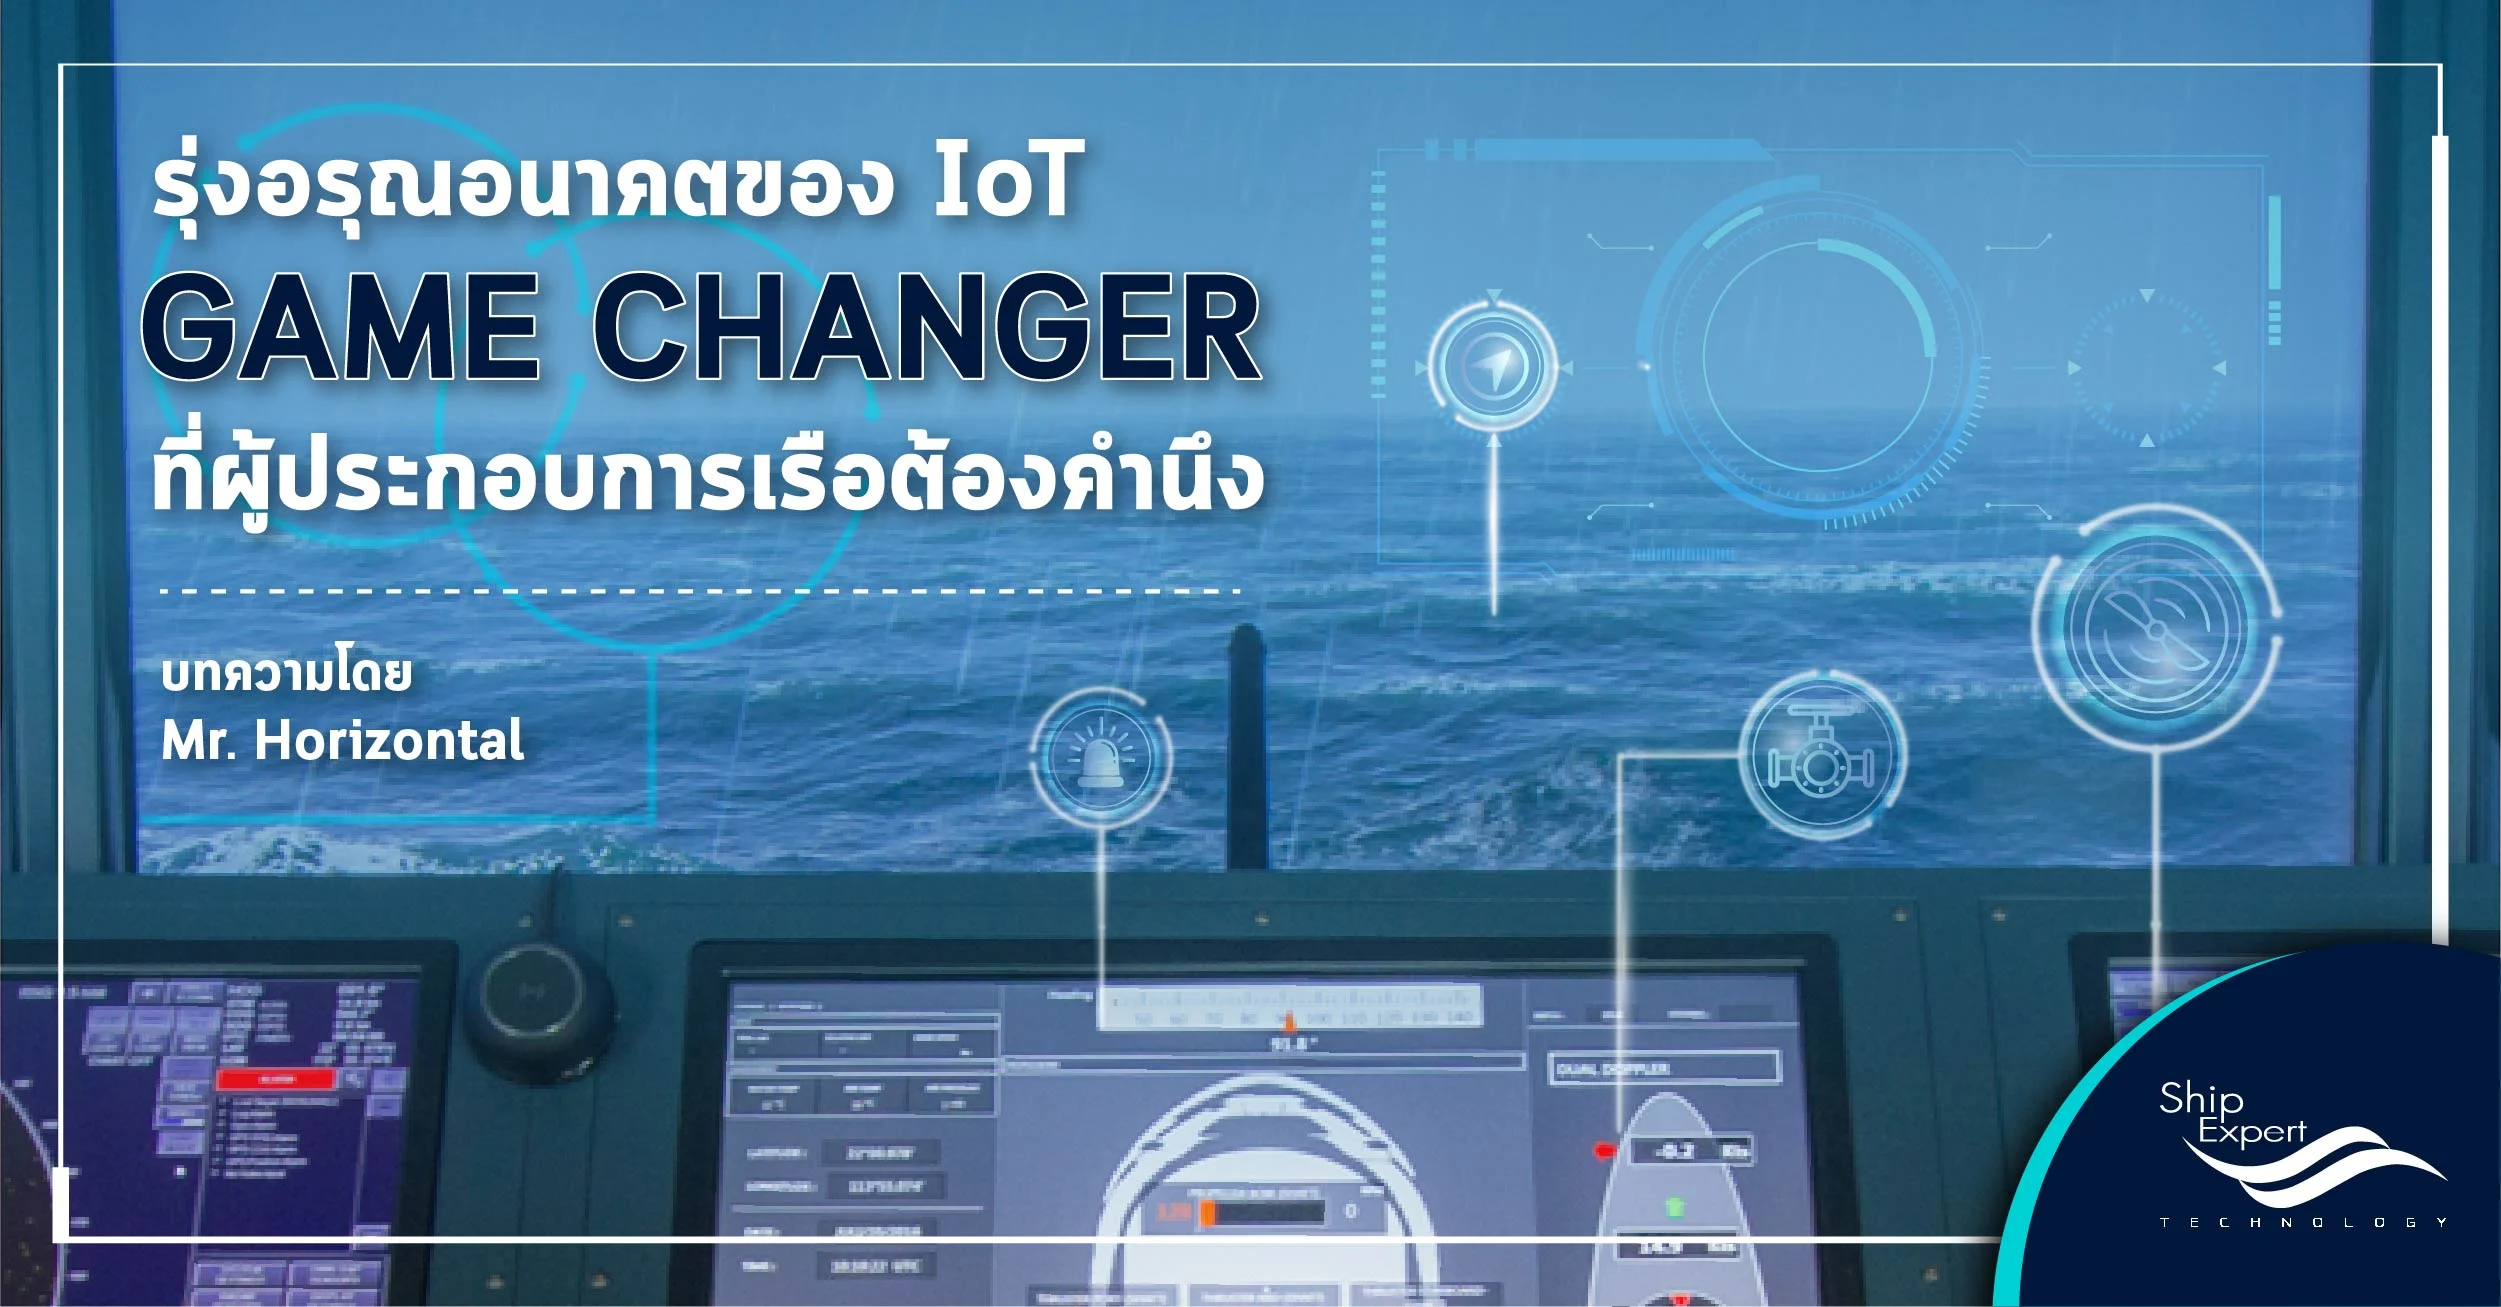 รุ่งอรุณอนาคตของ IoT , Game Changer ที่ผู้ประกอบการเรือต้องคำนึง